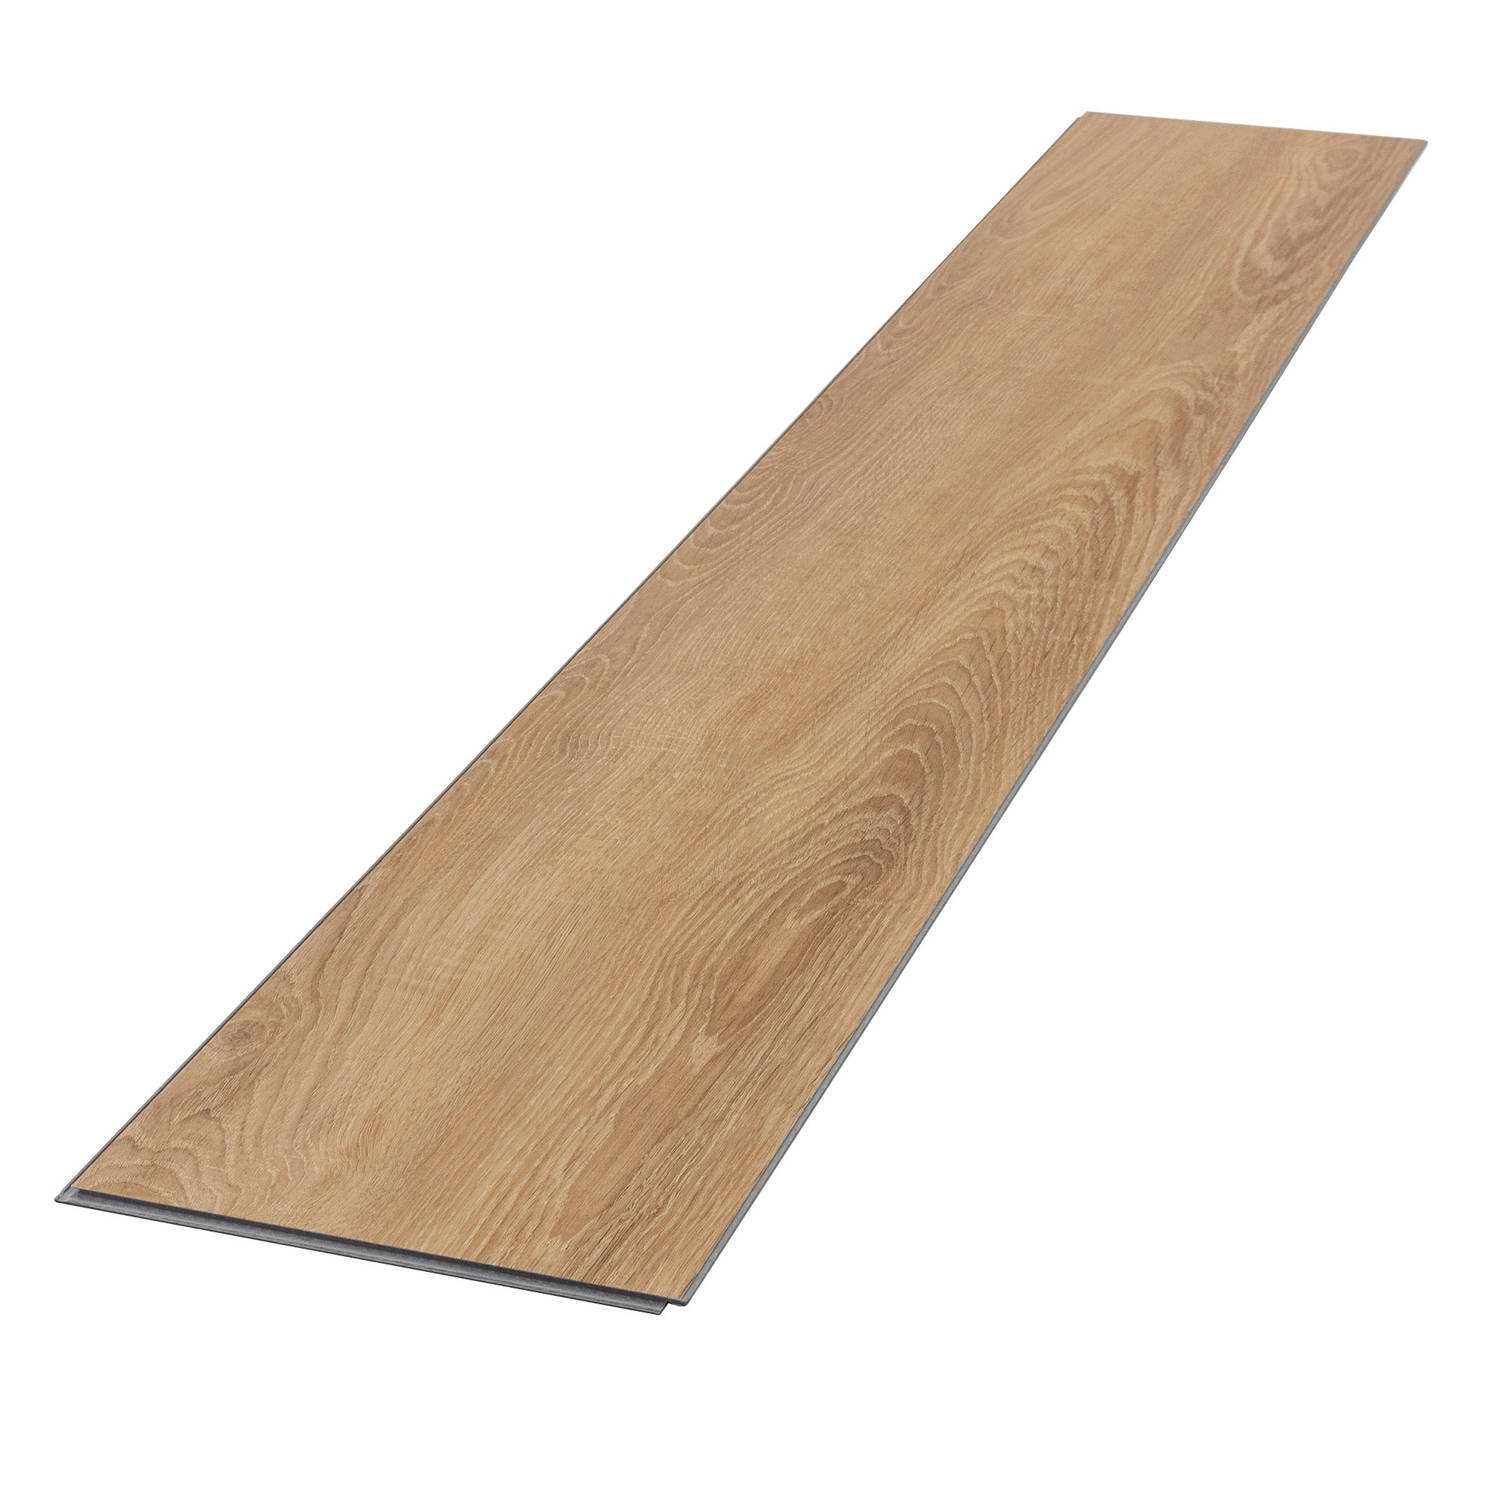 PVC vinyl vloer eiken zandbalk met kliksysteem voor 1,5 m² 122x18 cm design vloerpatroon ML-Design